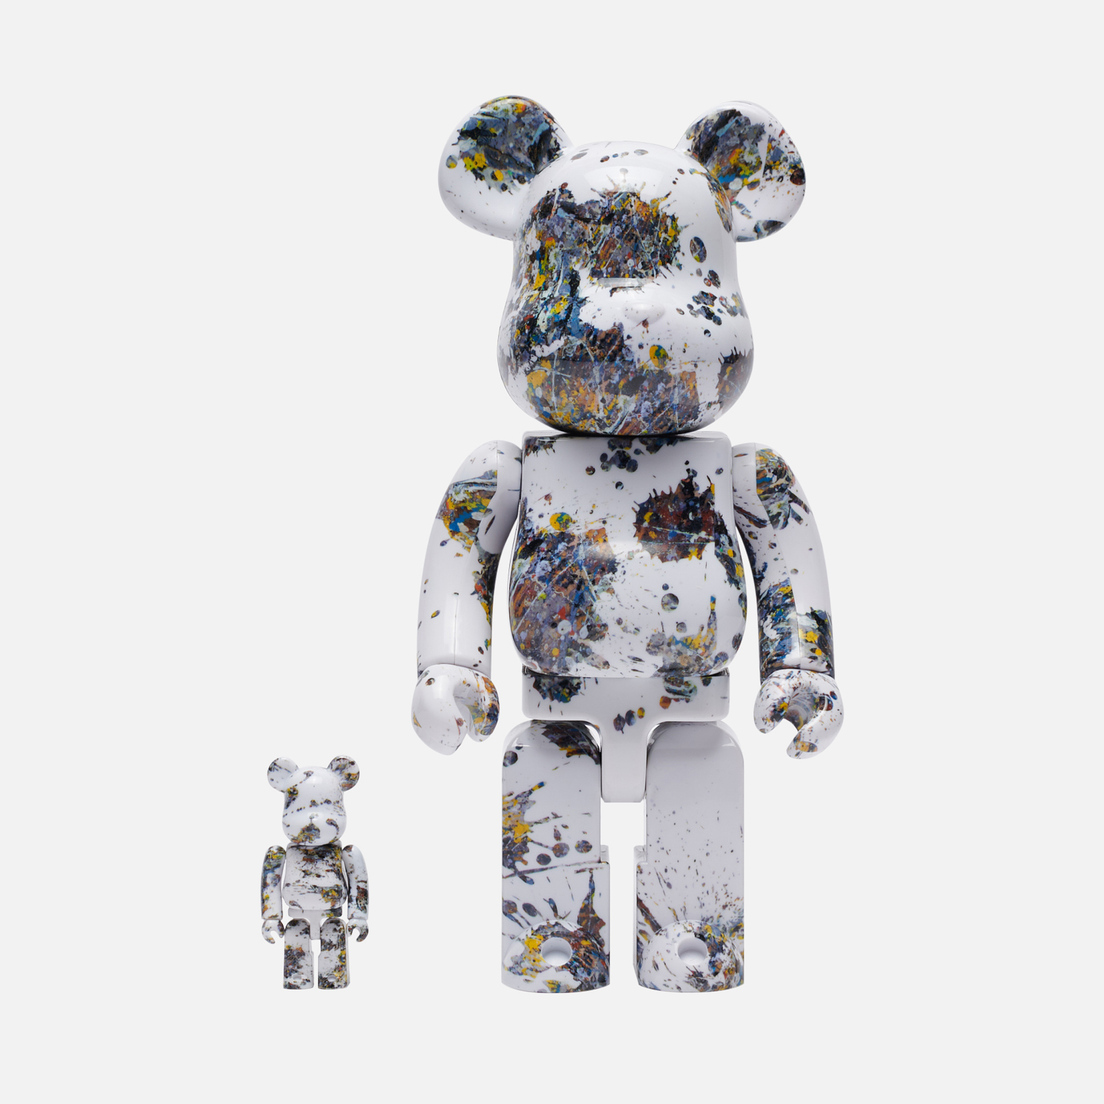 Medicom Toy Игрушка Jackson Pollock Studio Splash 100% & 400%